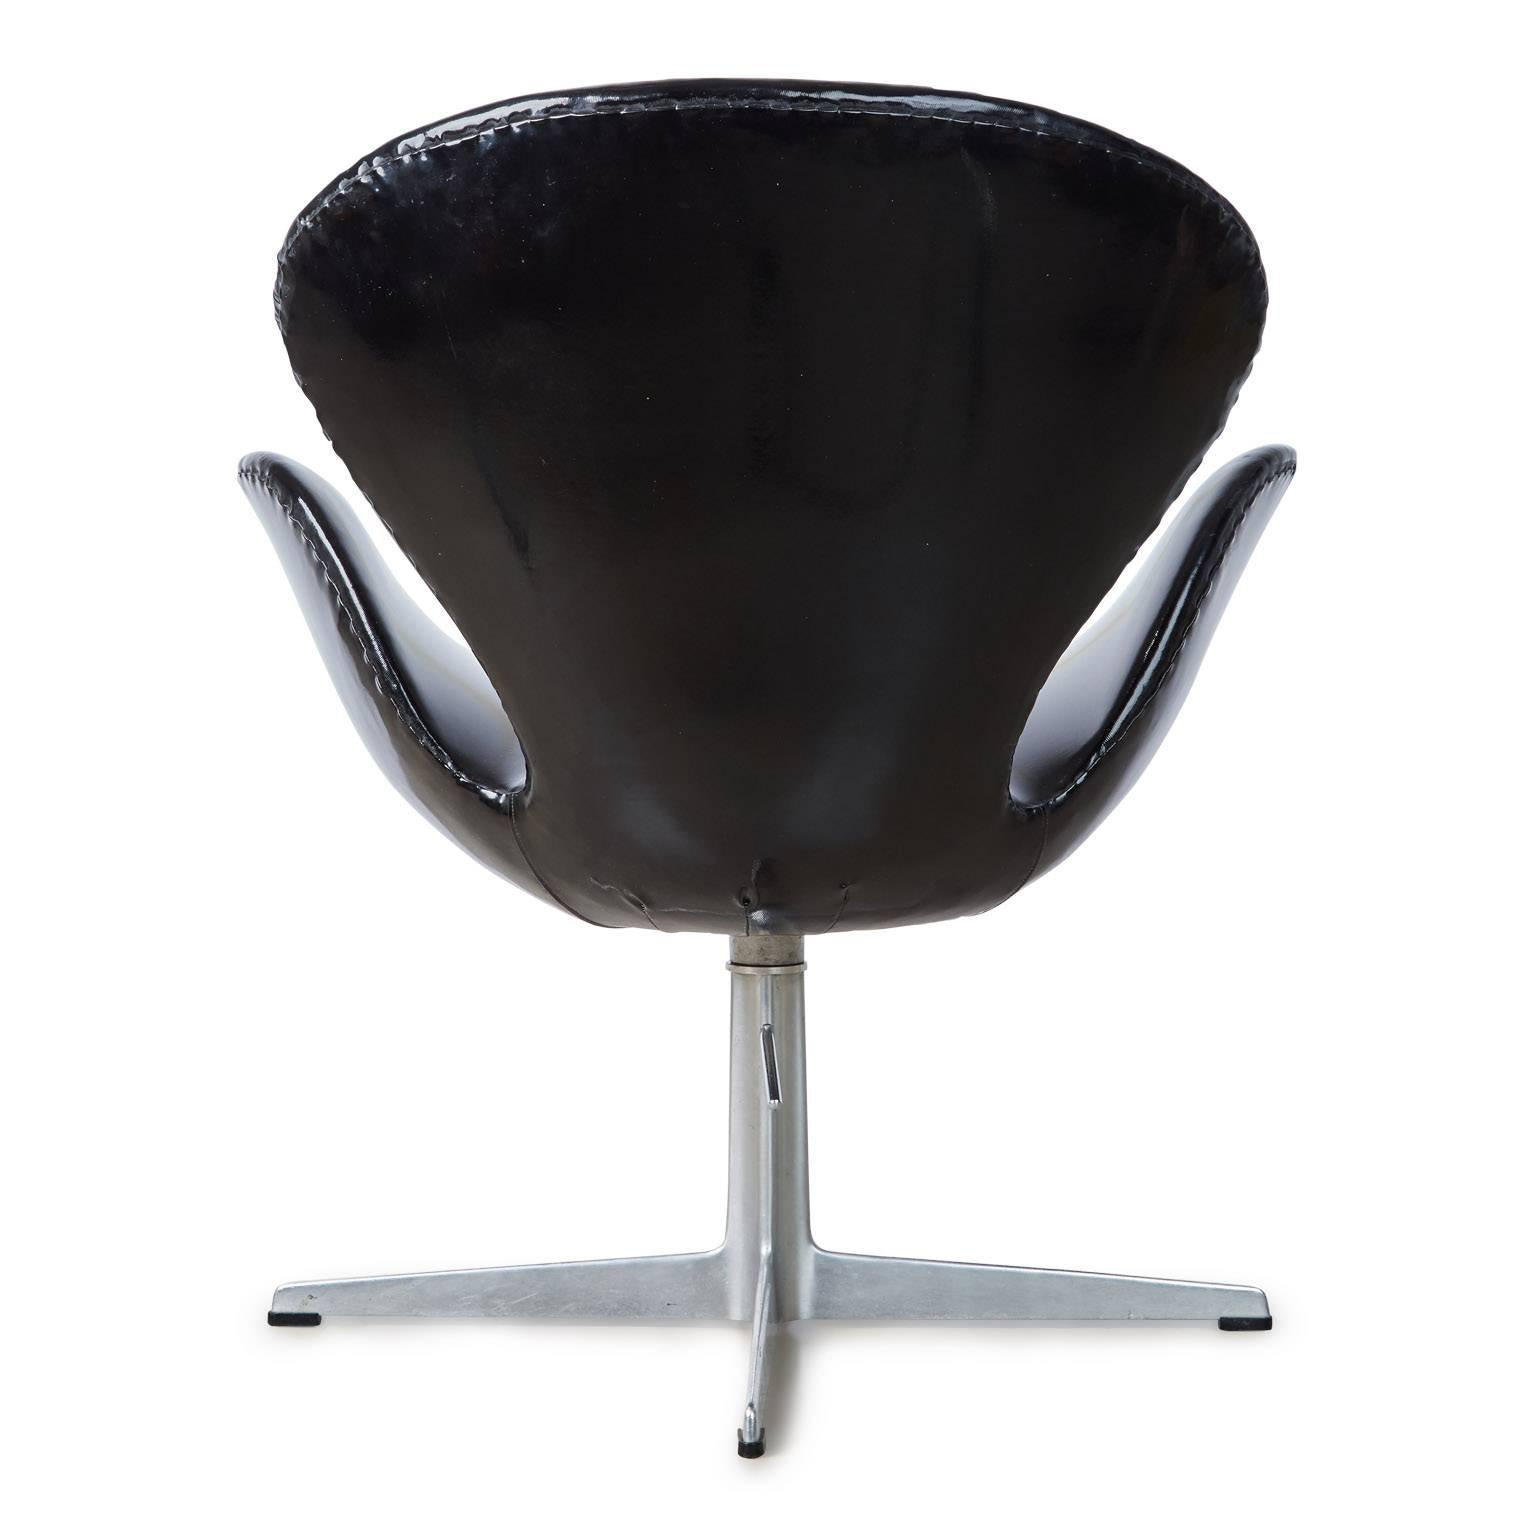 Scandinavian Modern Arne Jacobsen Swan Chair for Fritz Hansen, Dated 1966